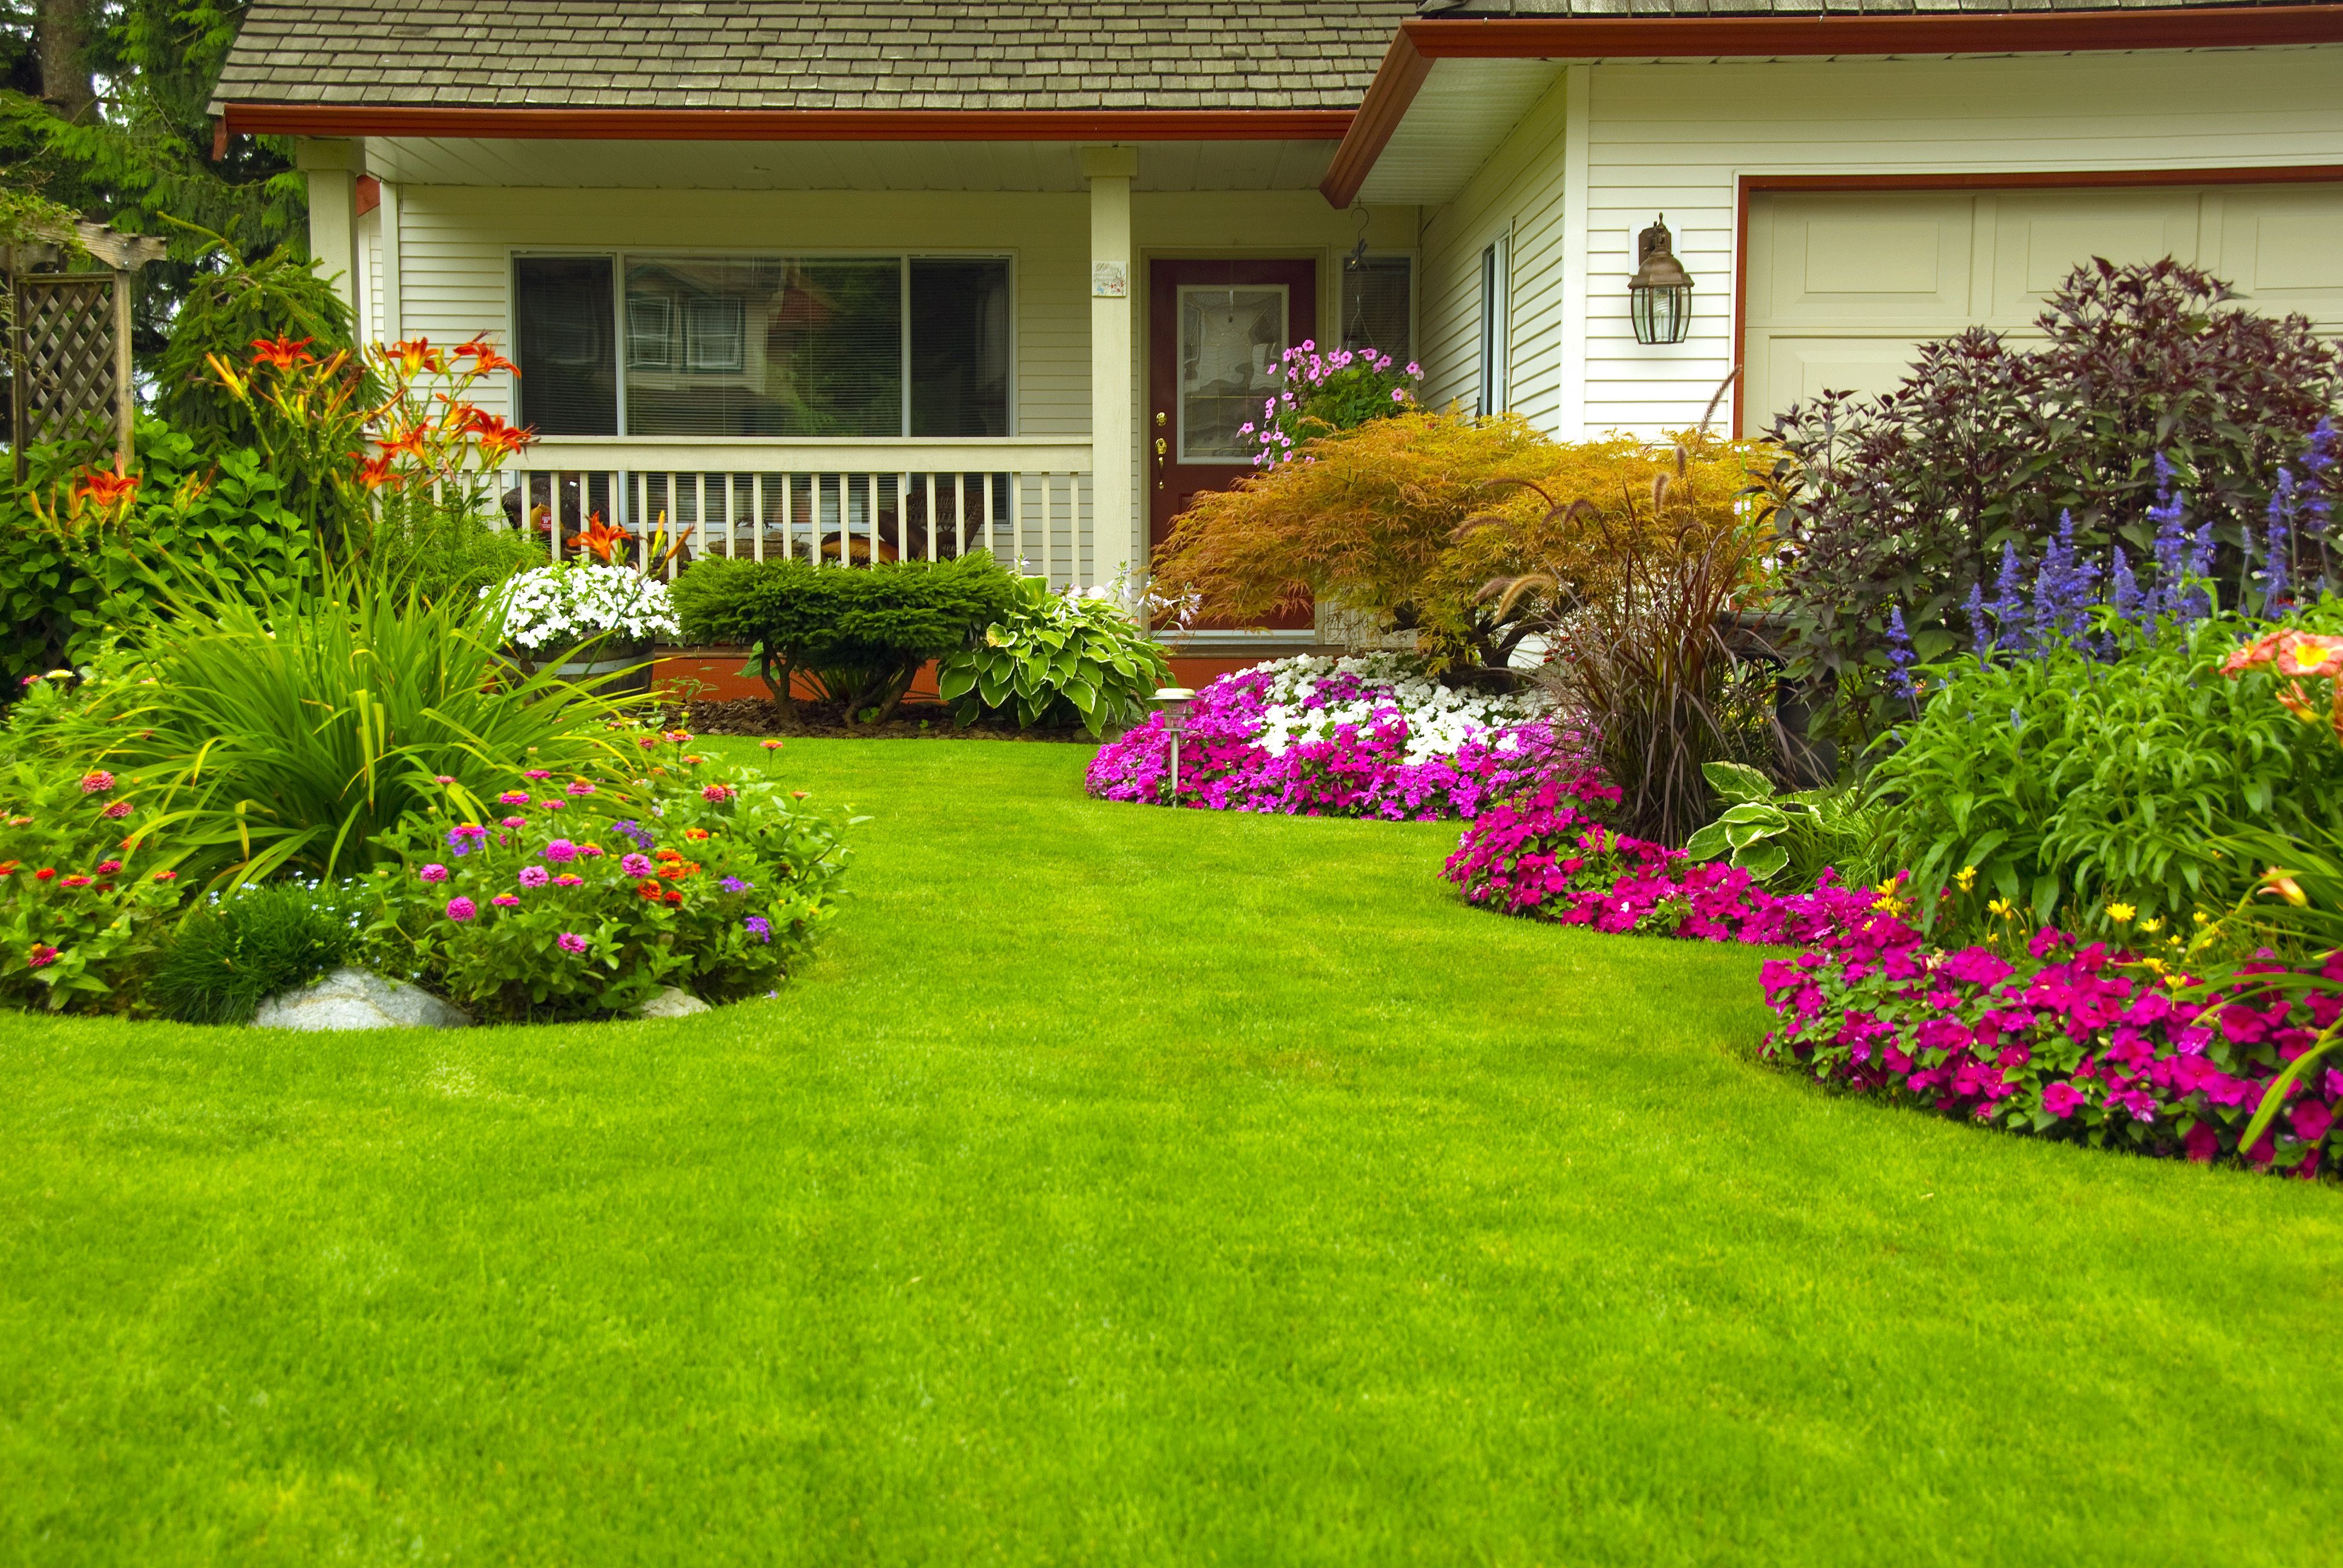 Sử dụng phương pháp kiểm soát cỏ dại hiệu quả giúp cho vườn của bạn luôn xanh tươi và gọn gàng. Hình ảnh liên quan sẽ giúp bạn hiểu rõ hơn về cách làm và tìm hiểu những phương pháp tiên tiến để giải quyết vấn đề cỏ dại hiệu quả nhất.